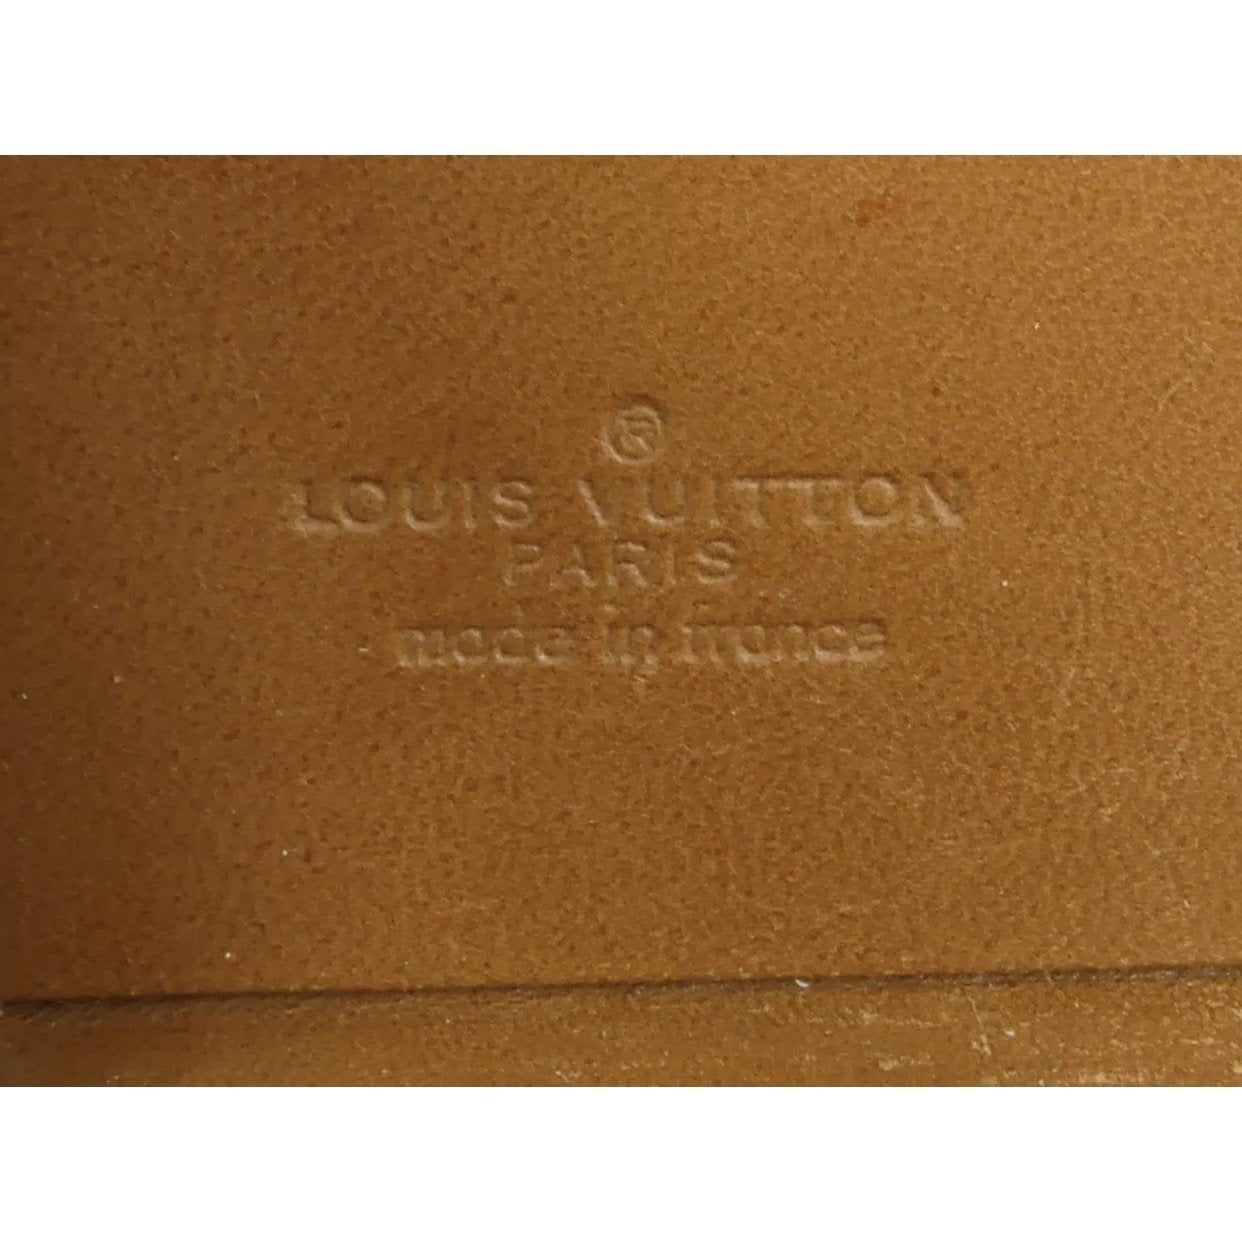 Louis Vuitton Rare Vintage Monogram Attache 108lv11 For Sale at